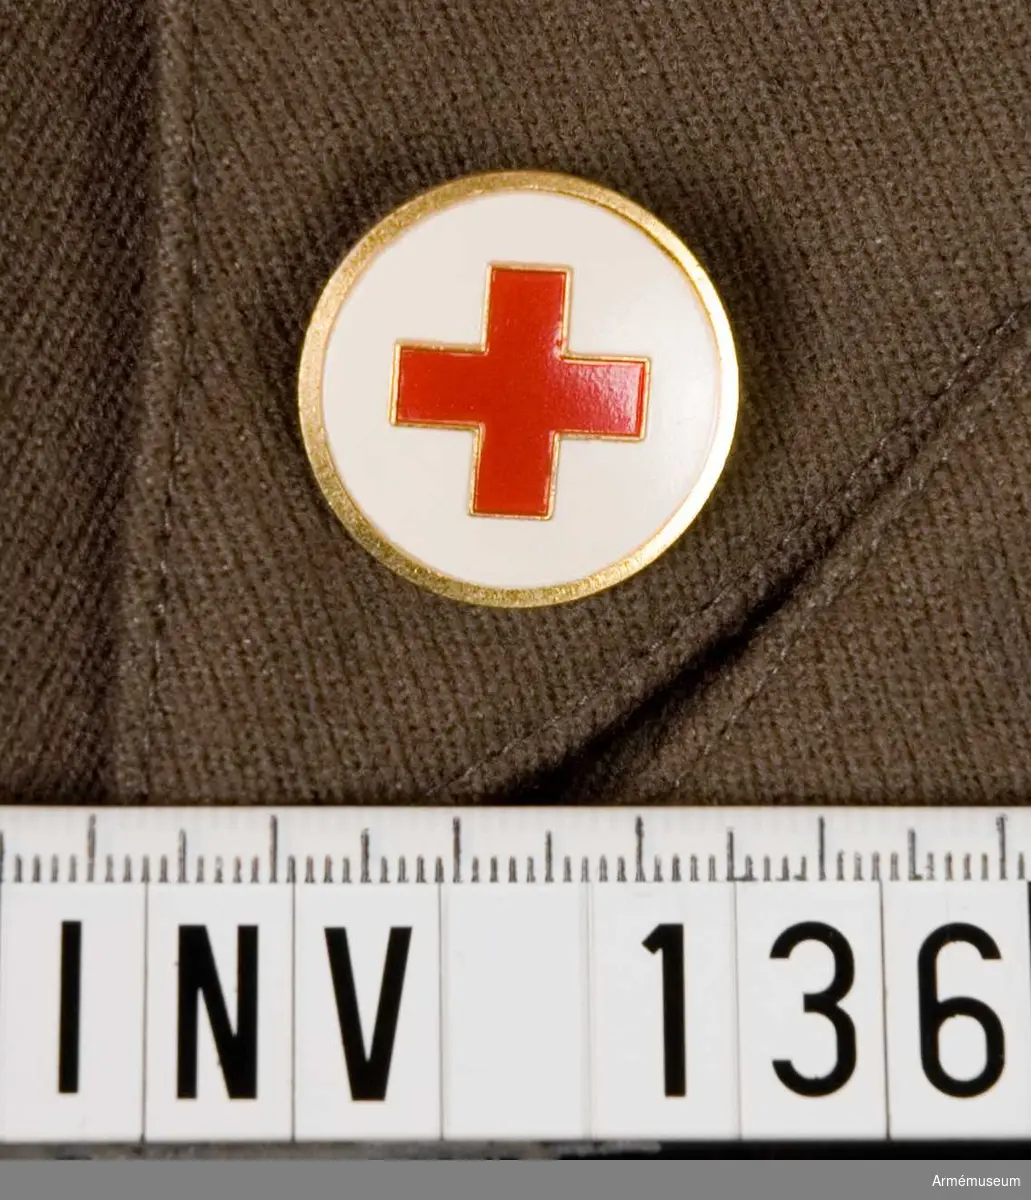 Samhörande nr är 132-144.
Märke m/1939-1953?, SRK.
Märkets framsida i mässing med vitmålad botten med ett rött kors. Baksidan har två runda hål avsedda för fastsättning.